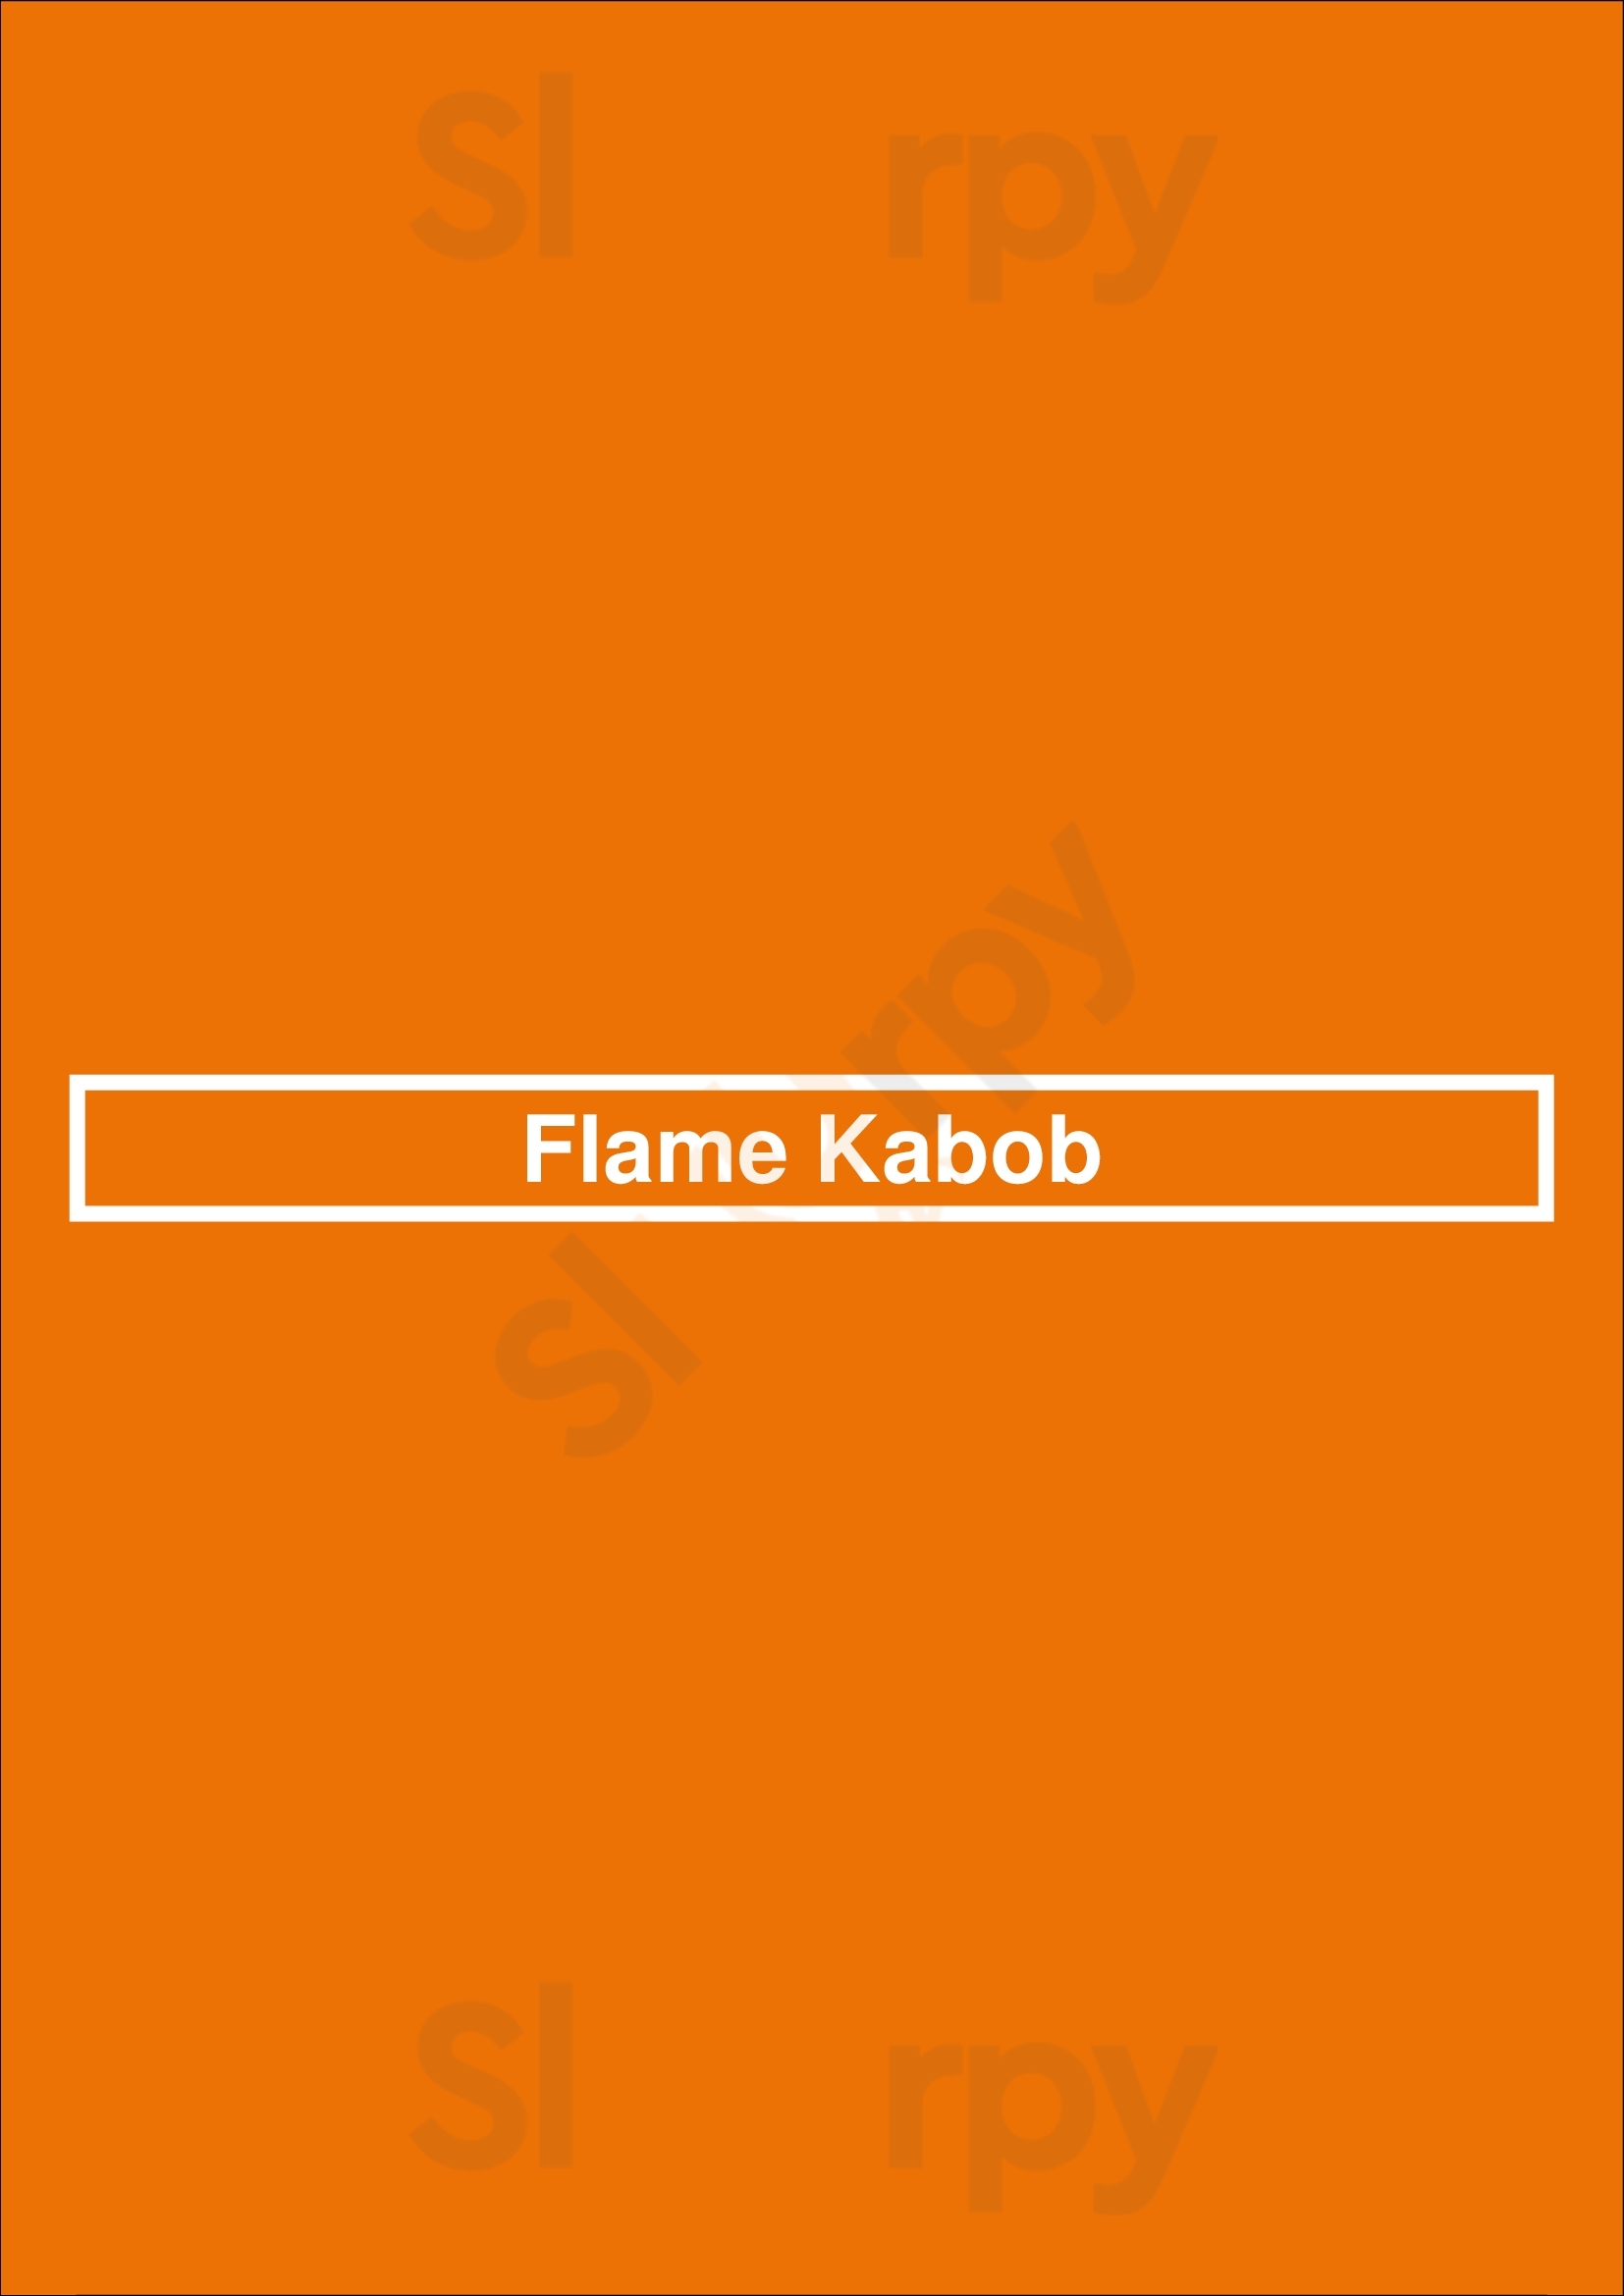 Flame Kabob Raleigh Menu - 1